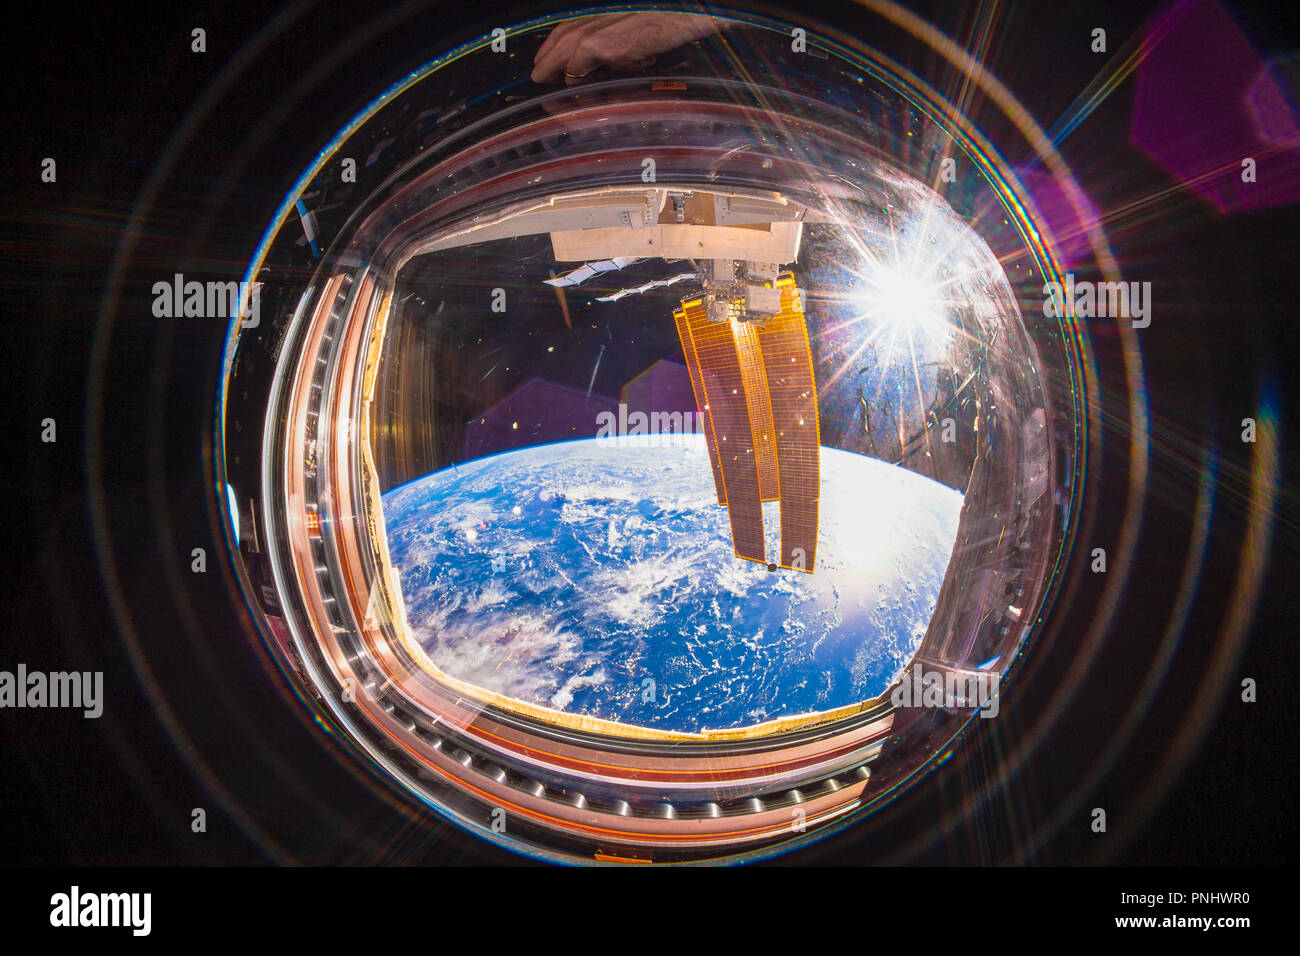 Der wunderschöne Planet Erde wird von der Internationalen Raumstation (ISS) aus gesehen. Weitwinkelansicht mit der Sonne im Bild. Stockfoto